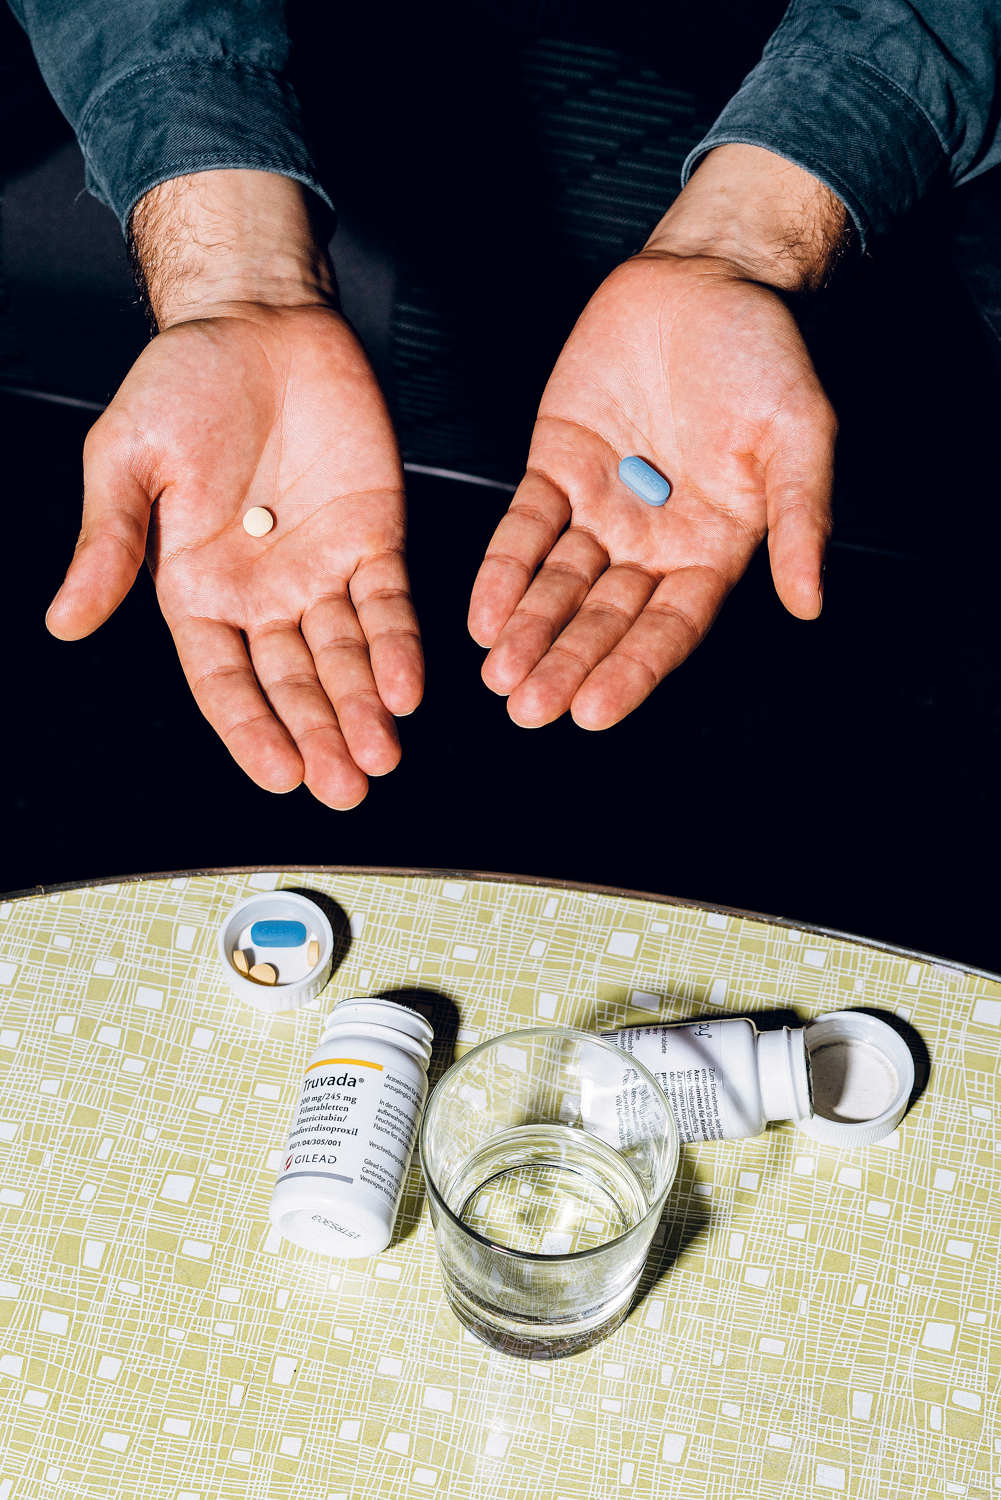 Die PEP-Therapie dauert einen Monat lang, in dem der Patient zwei verschiedene Medikamente (Truvada und Tivicay) nimmt. Kosten priviat: 1800 Euro. Foto: Marko Mestrovic